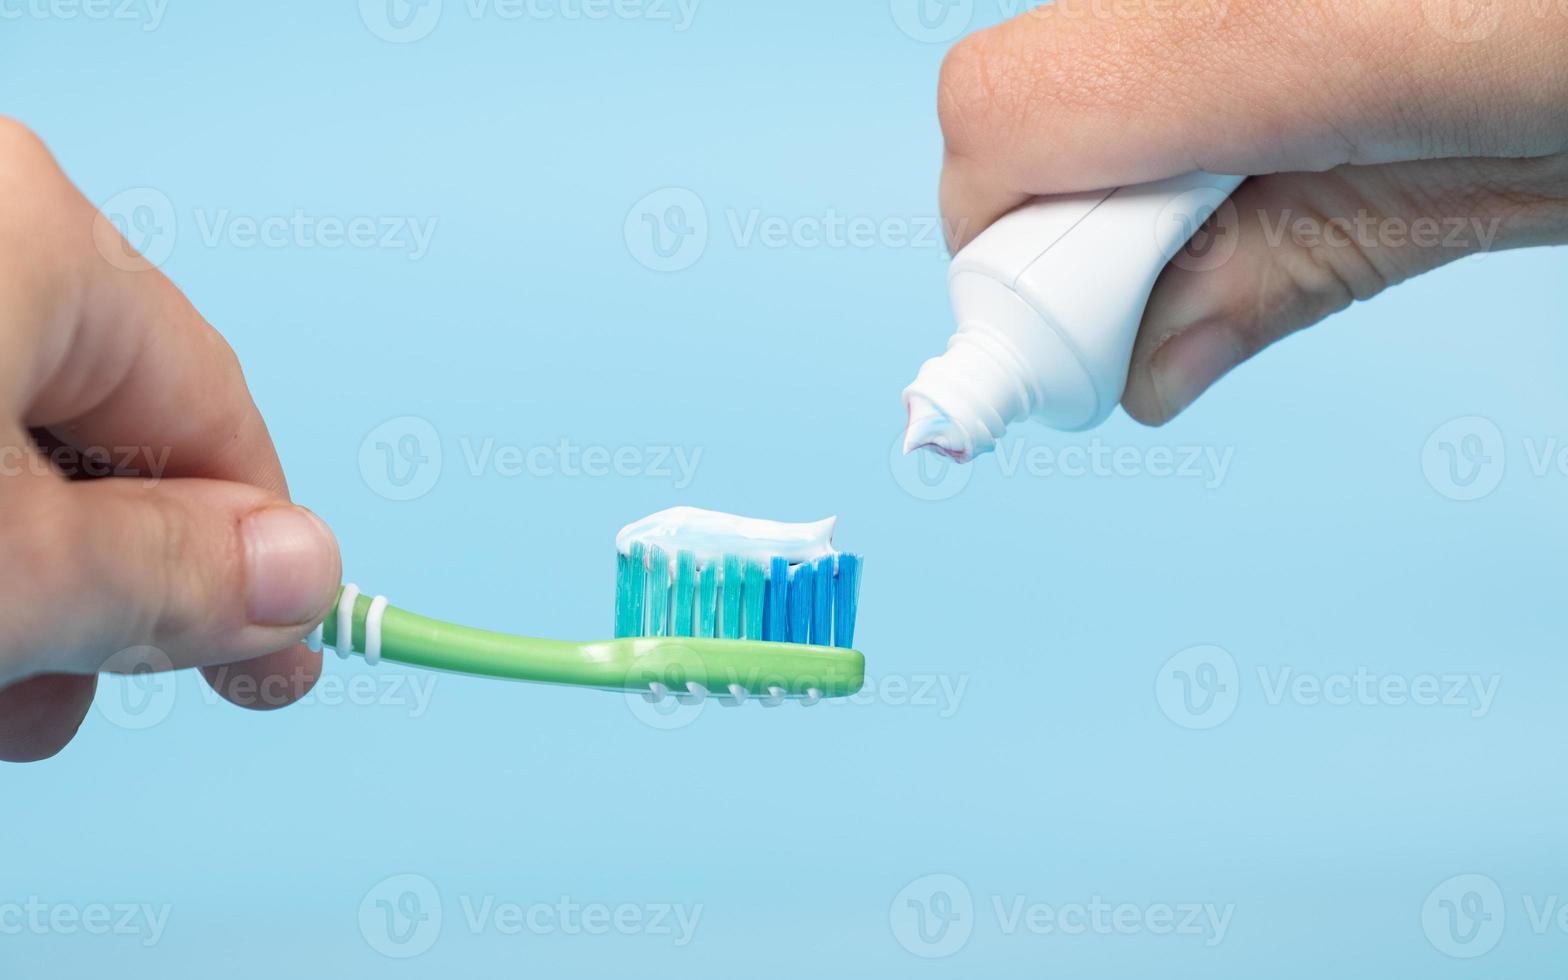 zahnpasta wird auf die zahnbürste aufgetragen, zahnputzen in der hand auf blauem hintergrund foto